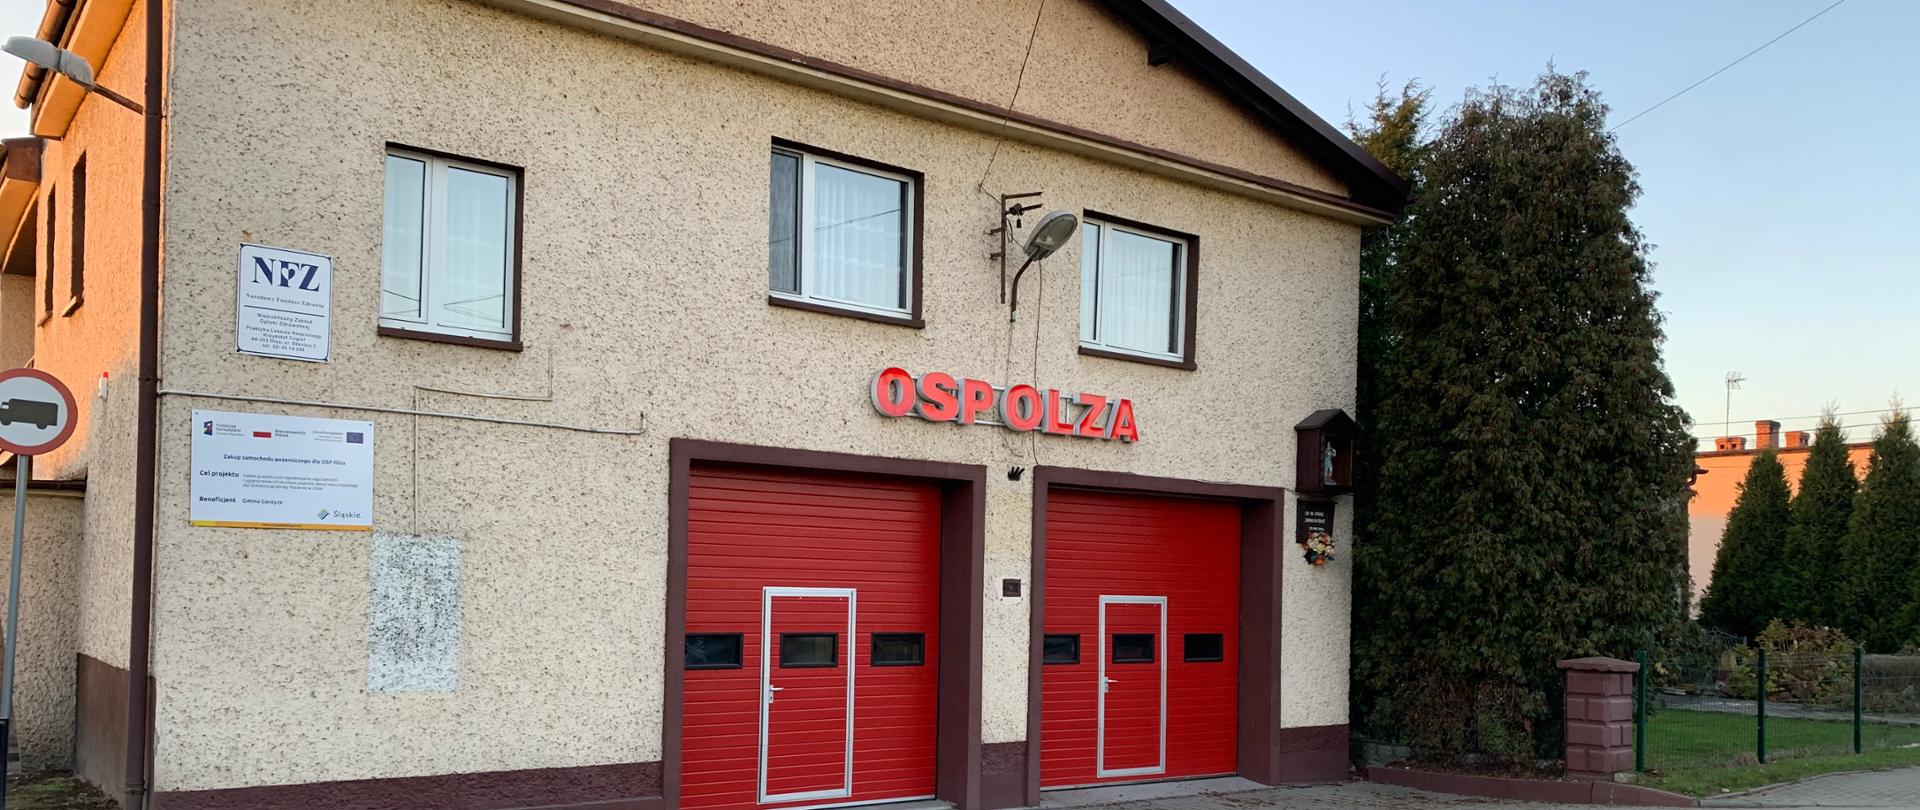 Zdjęcie prezentuje budynek jednostki OSP Olza